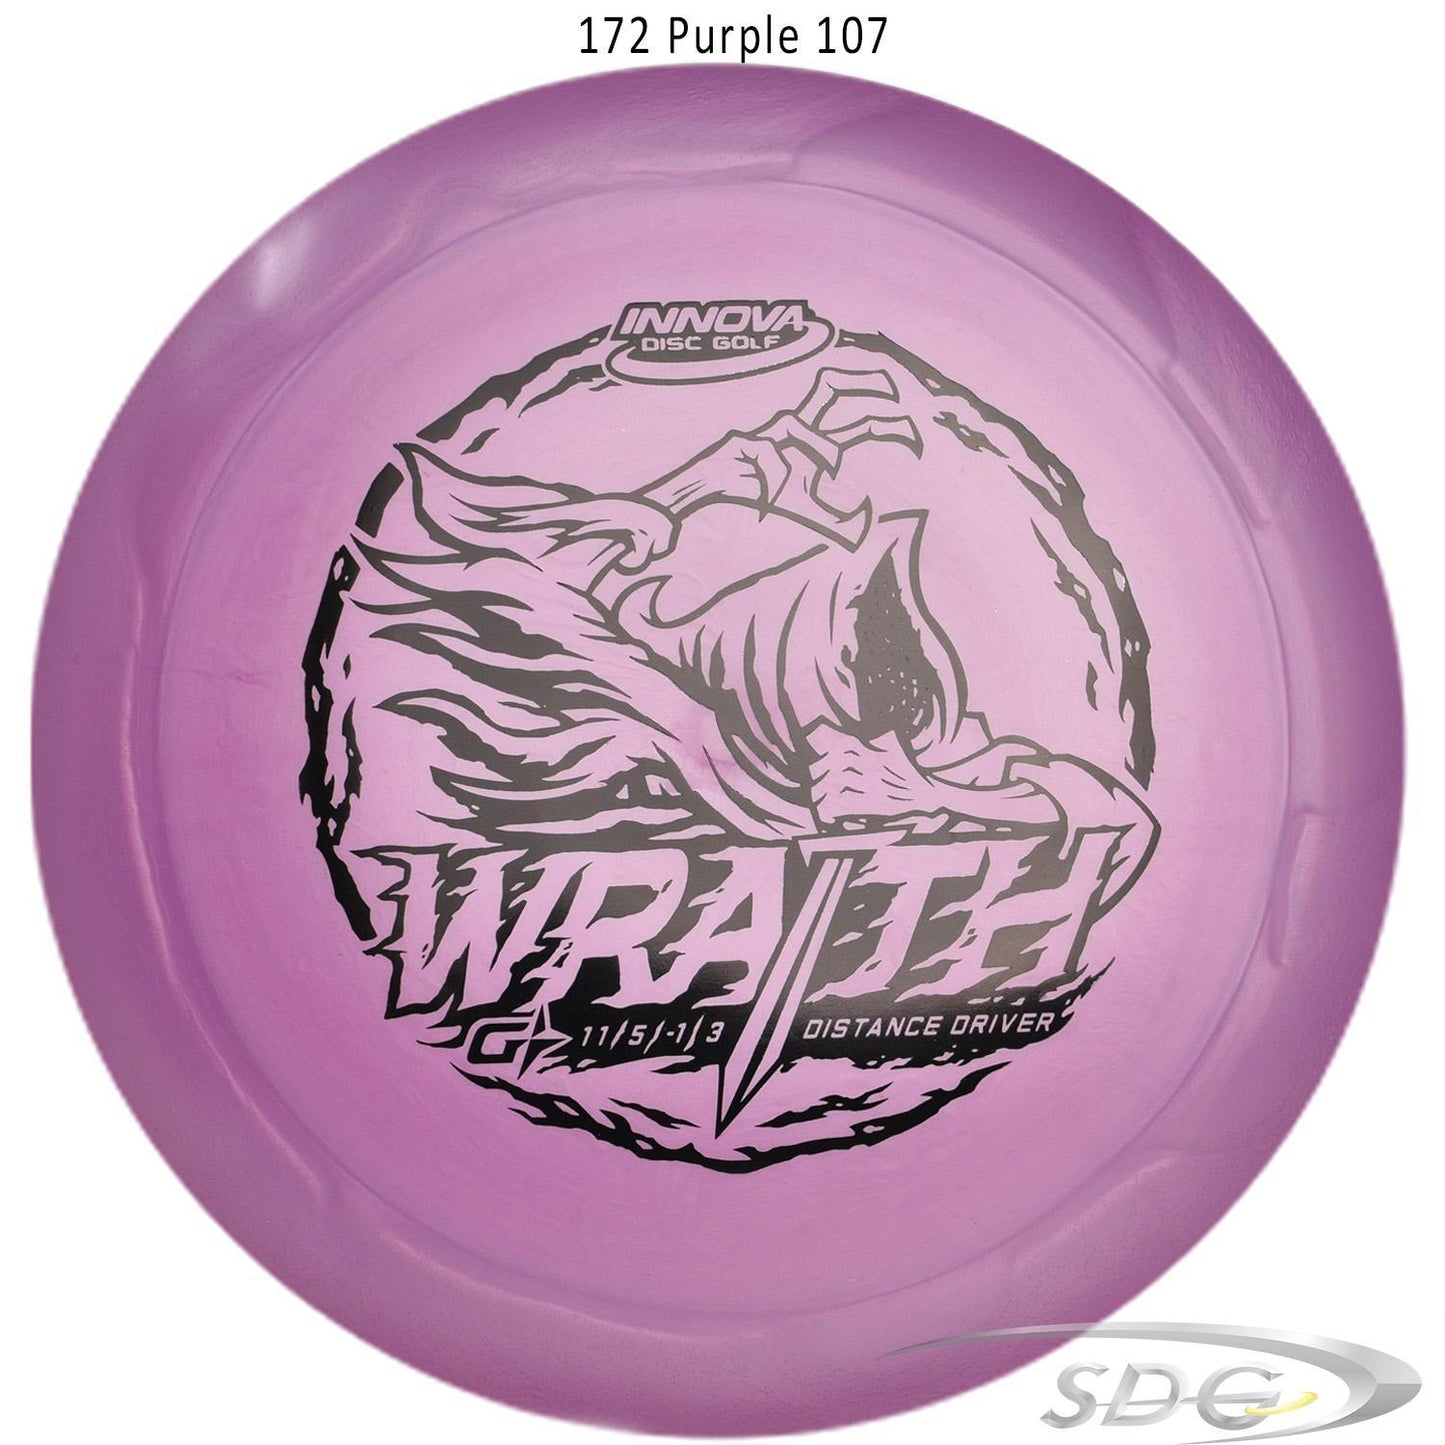 innova-gstar-wraith-disc-golf-distance-driver 172 Purple 107 